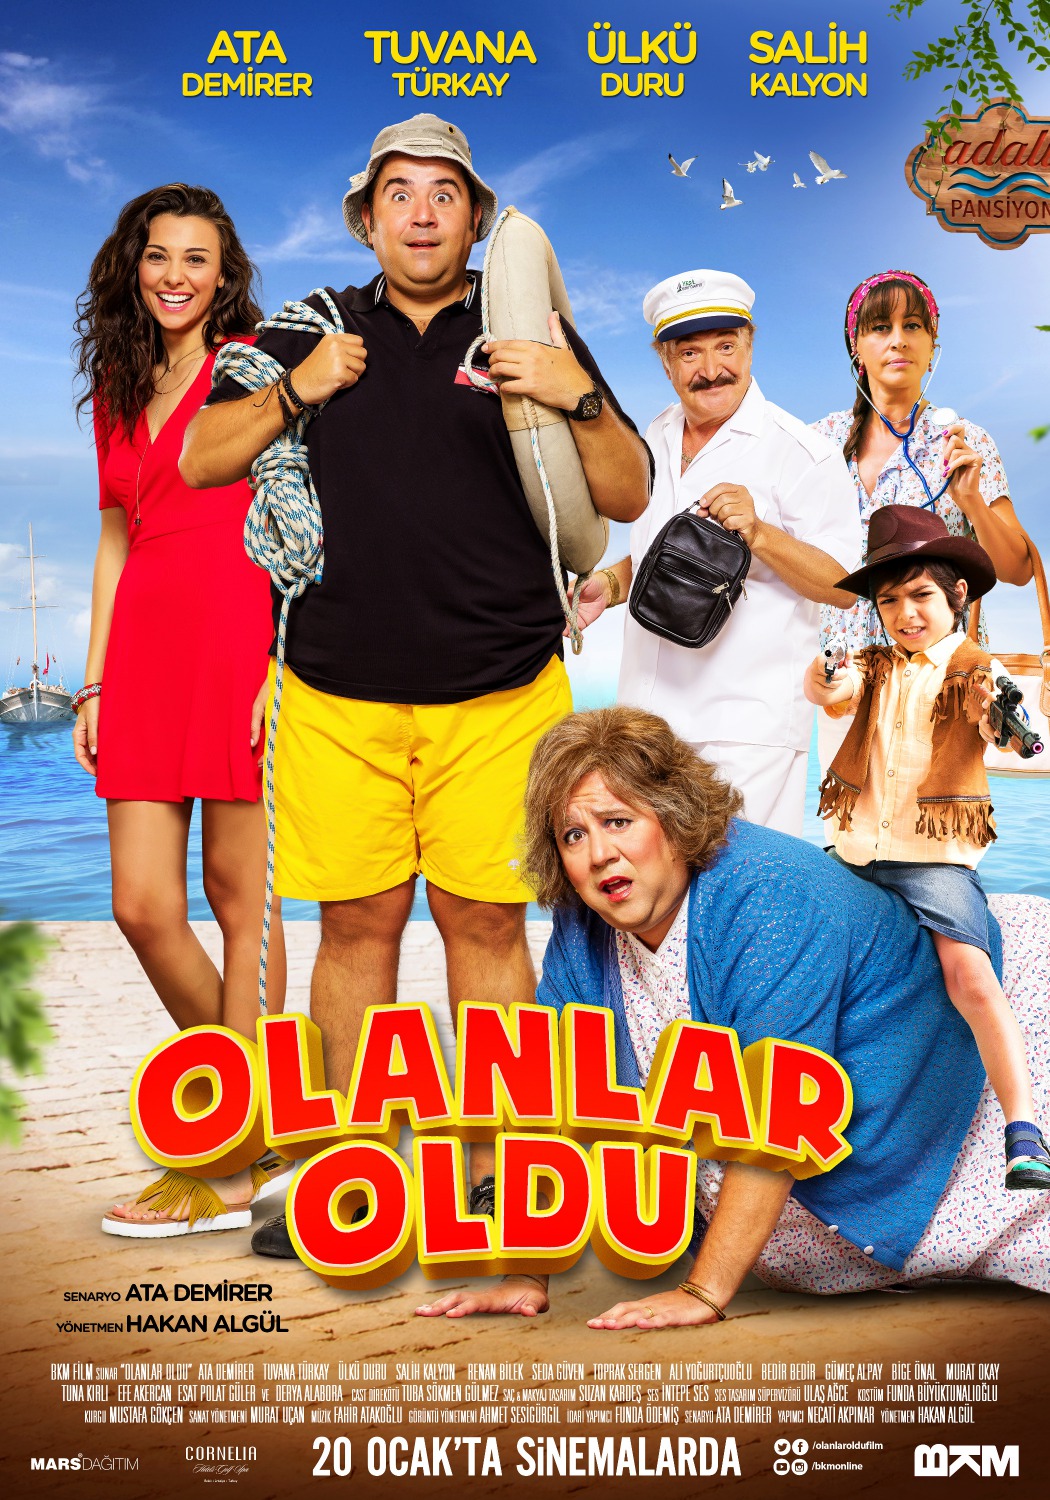 Extra Large Movie Poster Image for Olanlar Oldu 